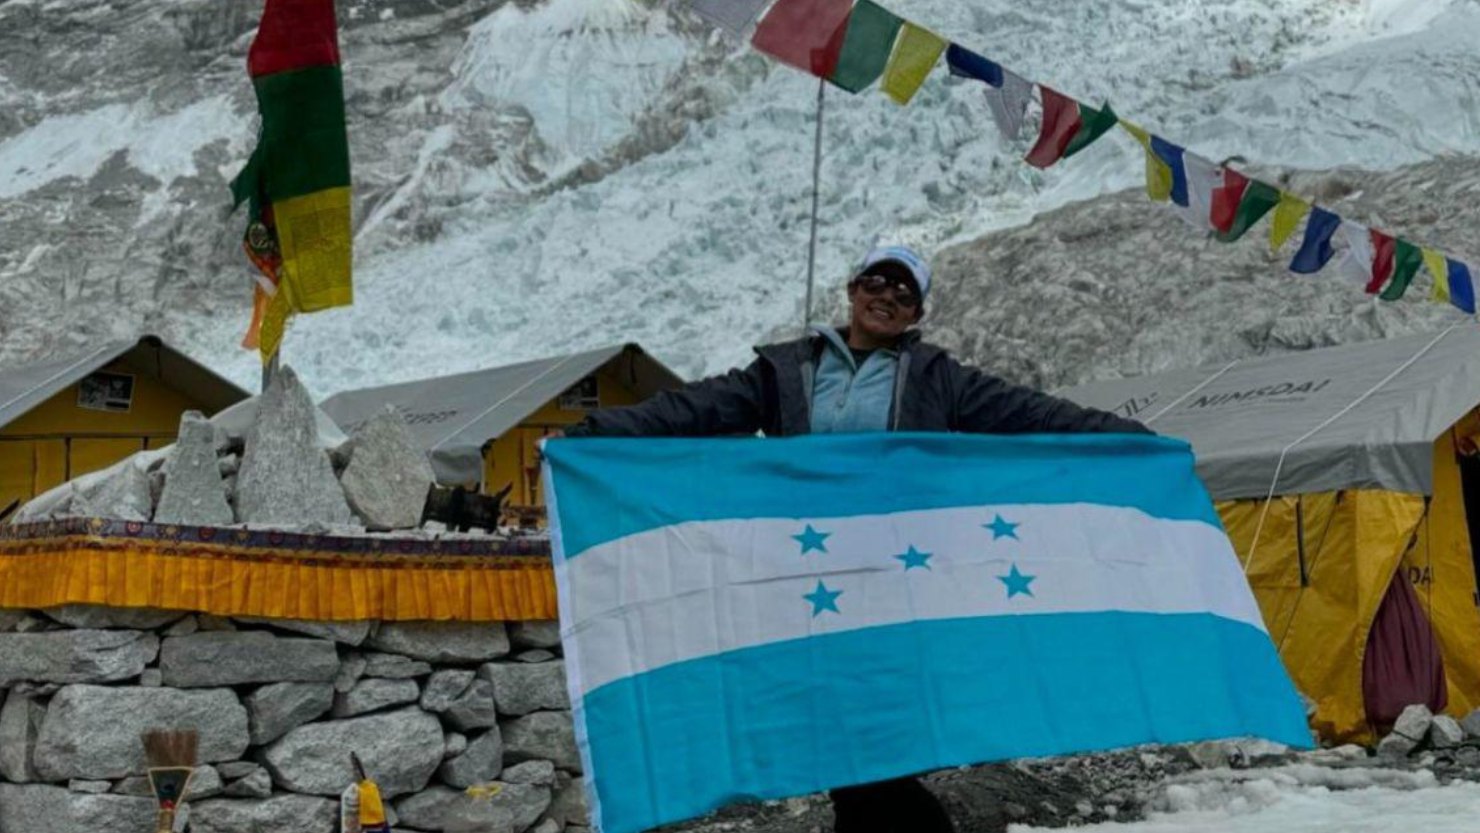 Triunfo en las alturas, lucha en la recuperación: La odisea de Dora Raudales tras conquistar el Everest